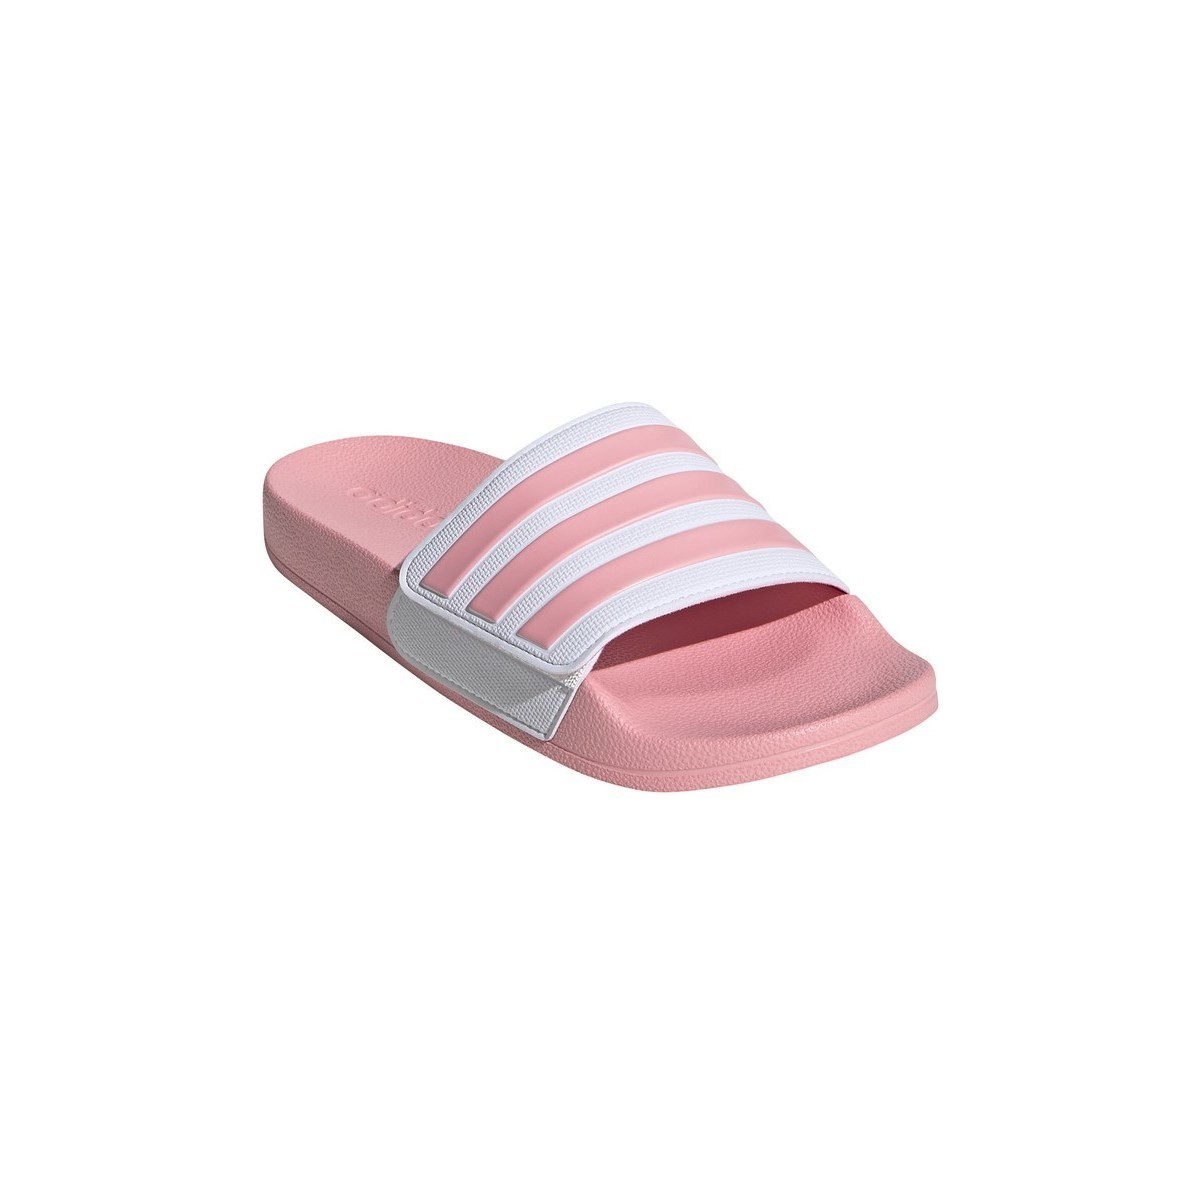 Schuhe Damen Wassersportschuhe adidas Originals Adilette Weiß, Rosa